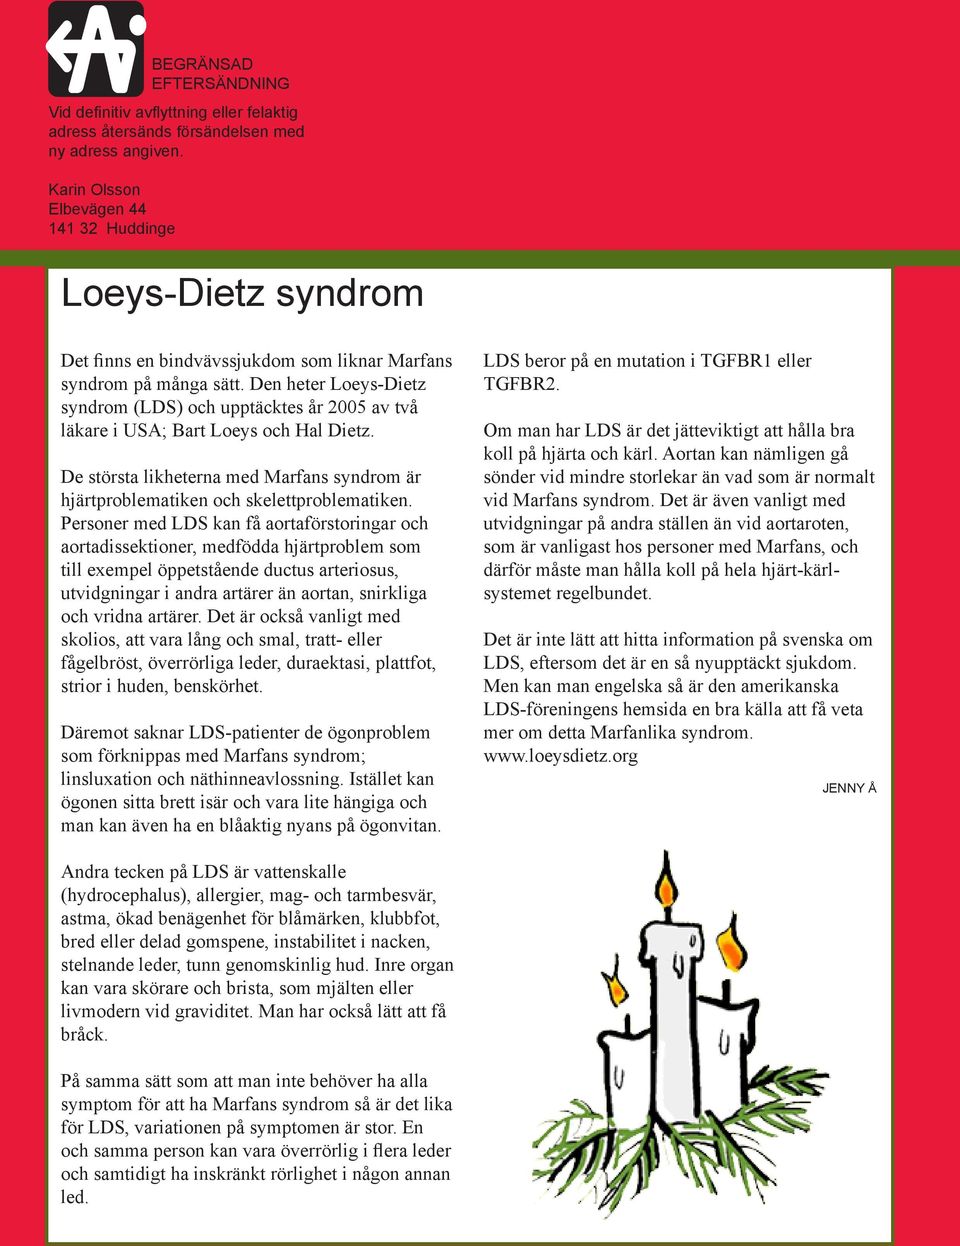 Den heter Loeys-Dietz syndrom (LDS) och upptäcktes år 2005 av två läkare i USA; Bart Loeys och Hal Dietz. De största likheterna med Marfans syndrom är hjärtproblematiken och skelettproblematiken.